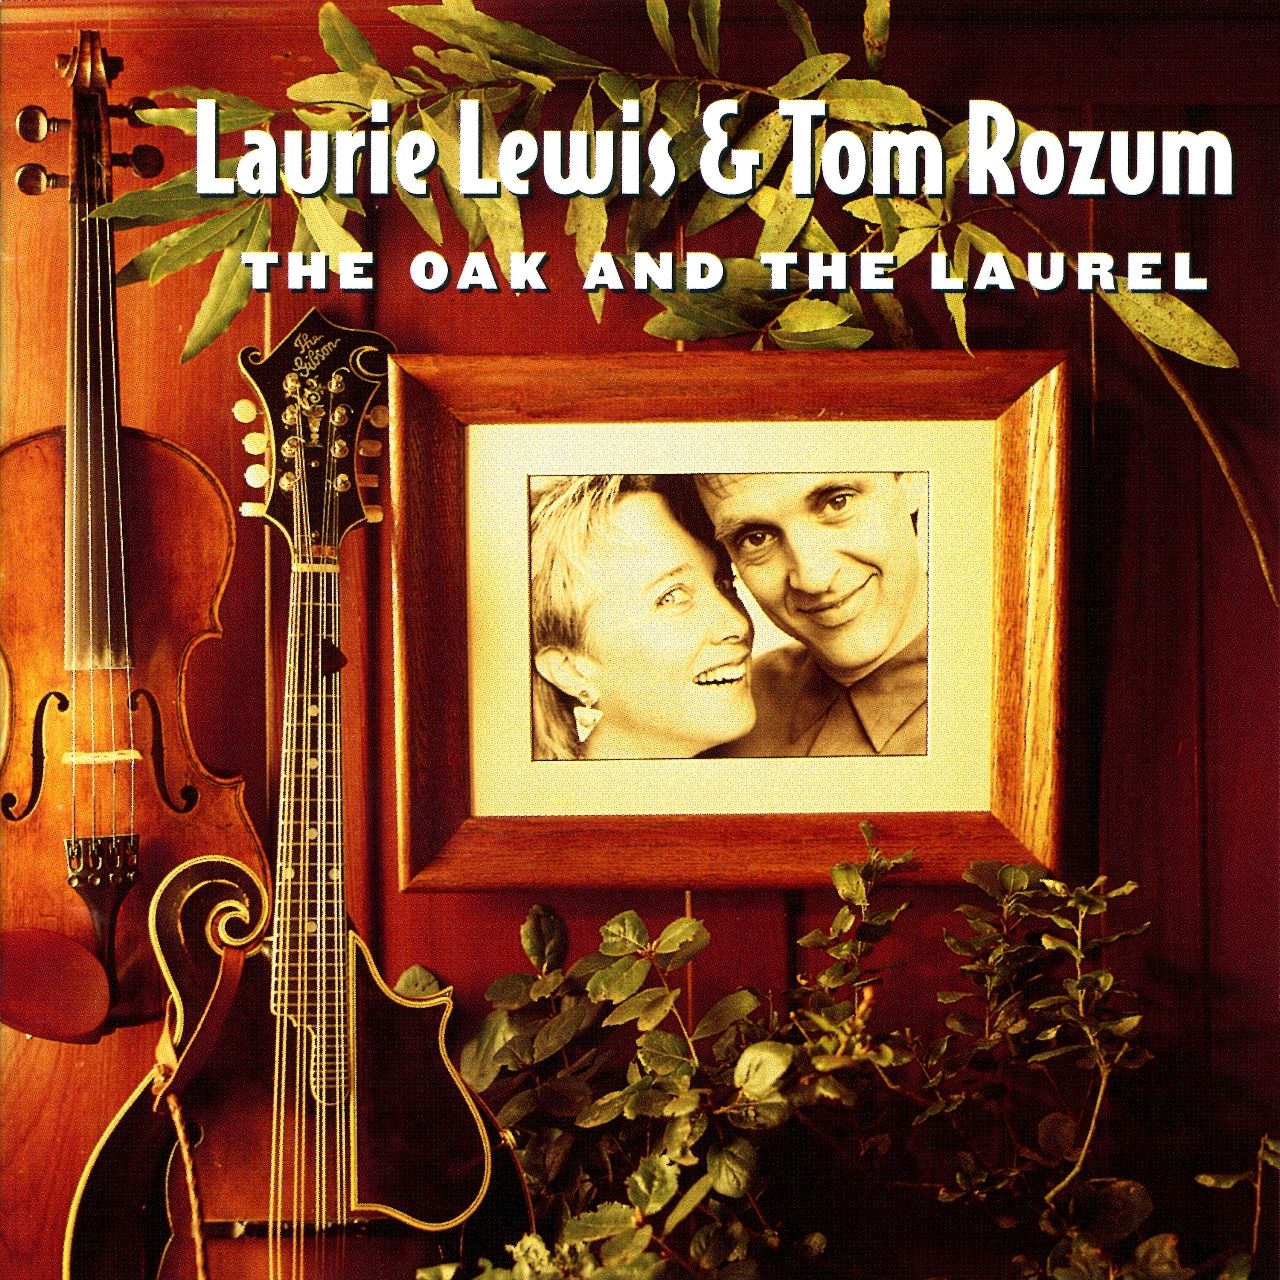 Laurie Lewis & Tom Rozum - The Oak And The Laurel cover album